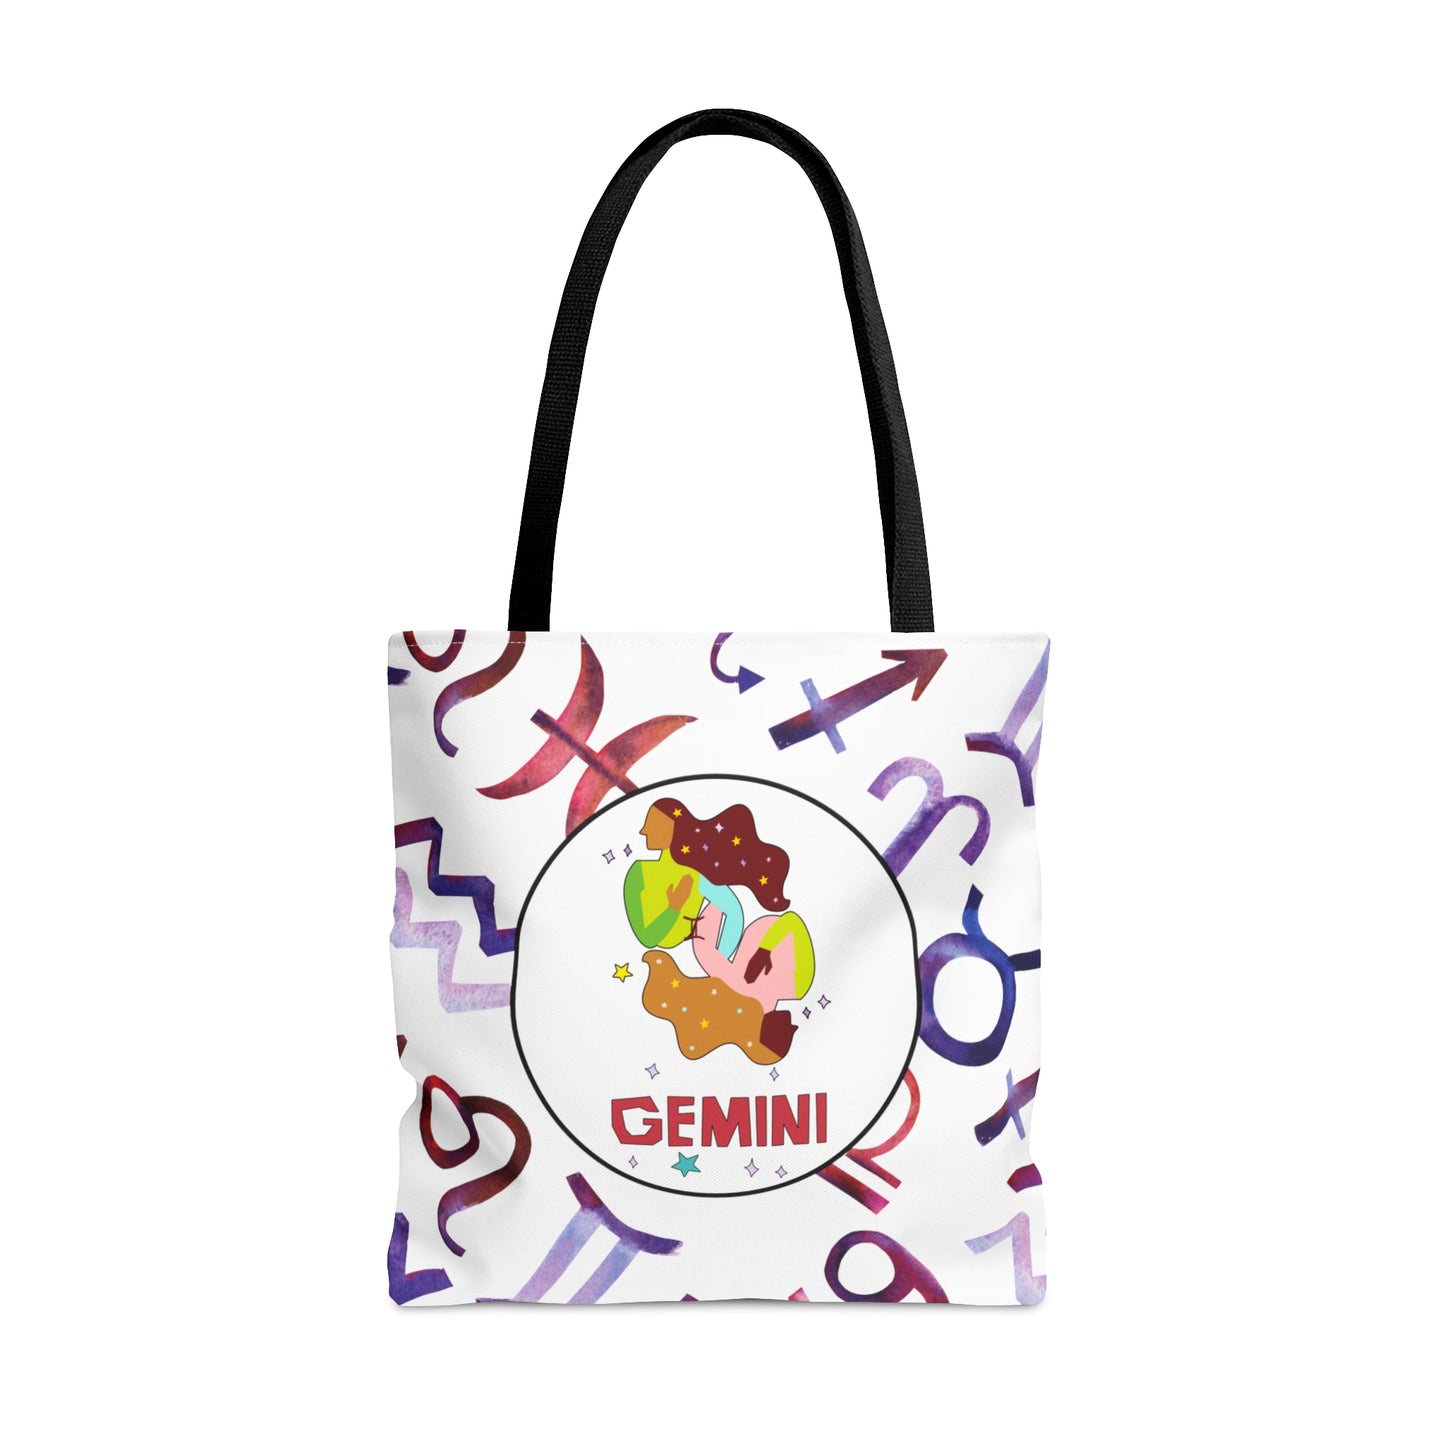 Gemini (name) - etzart